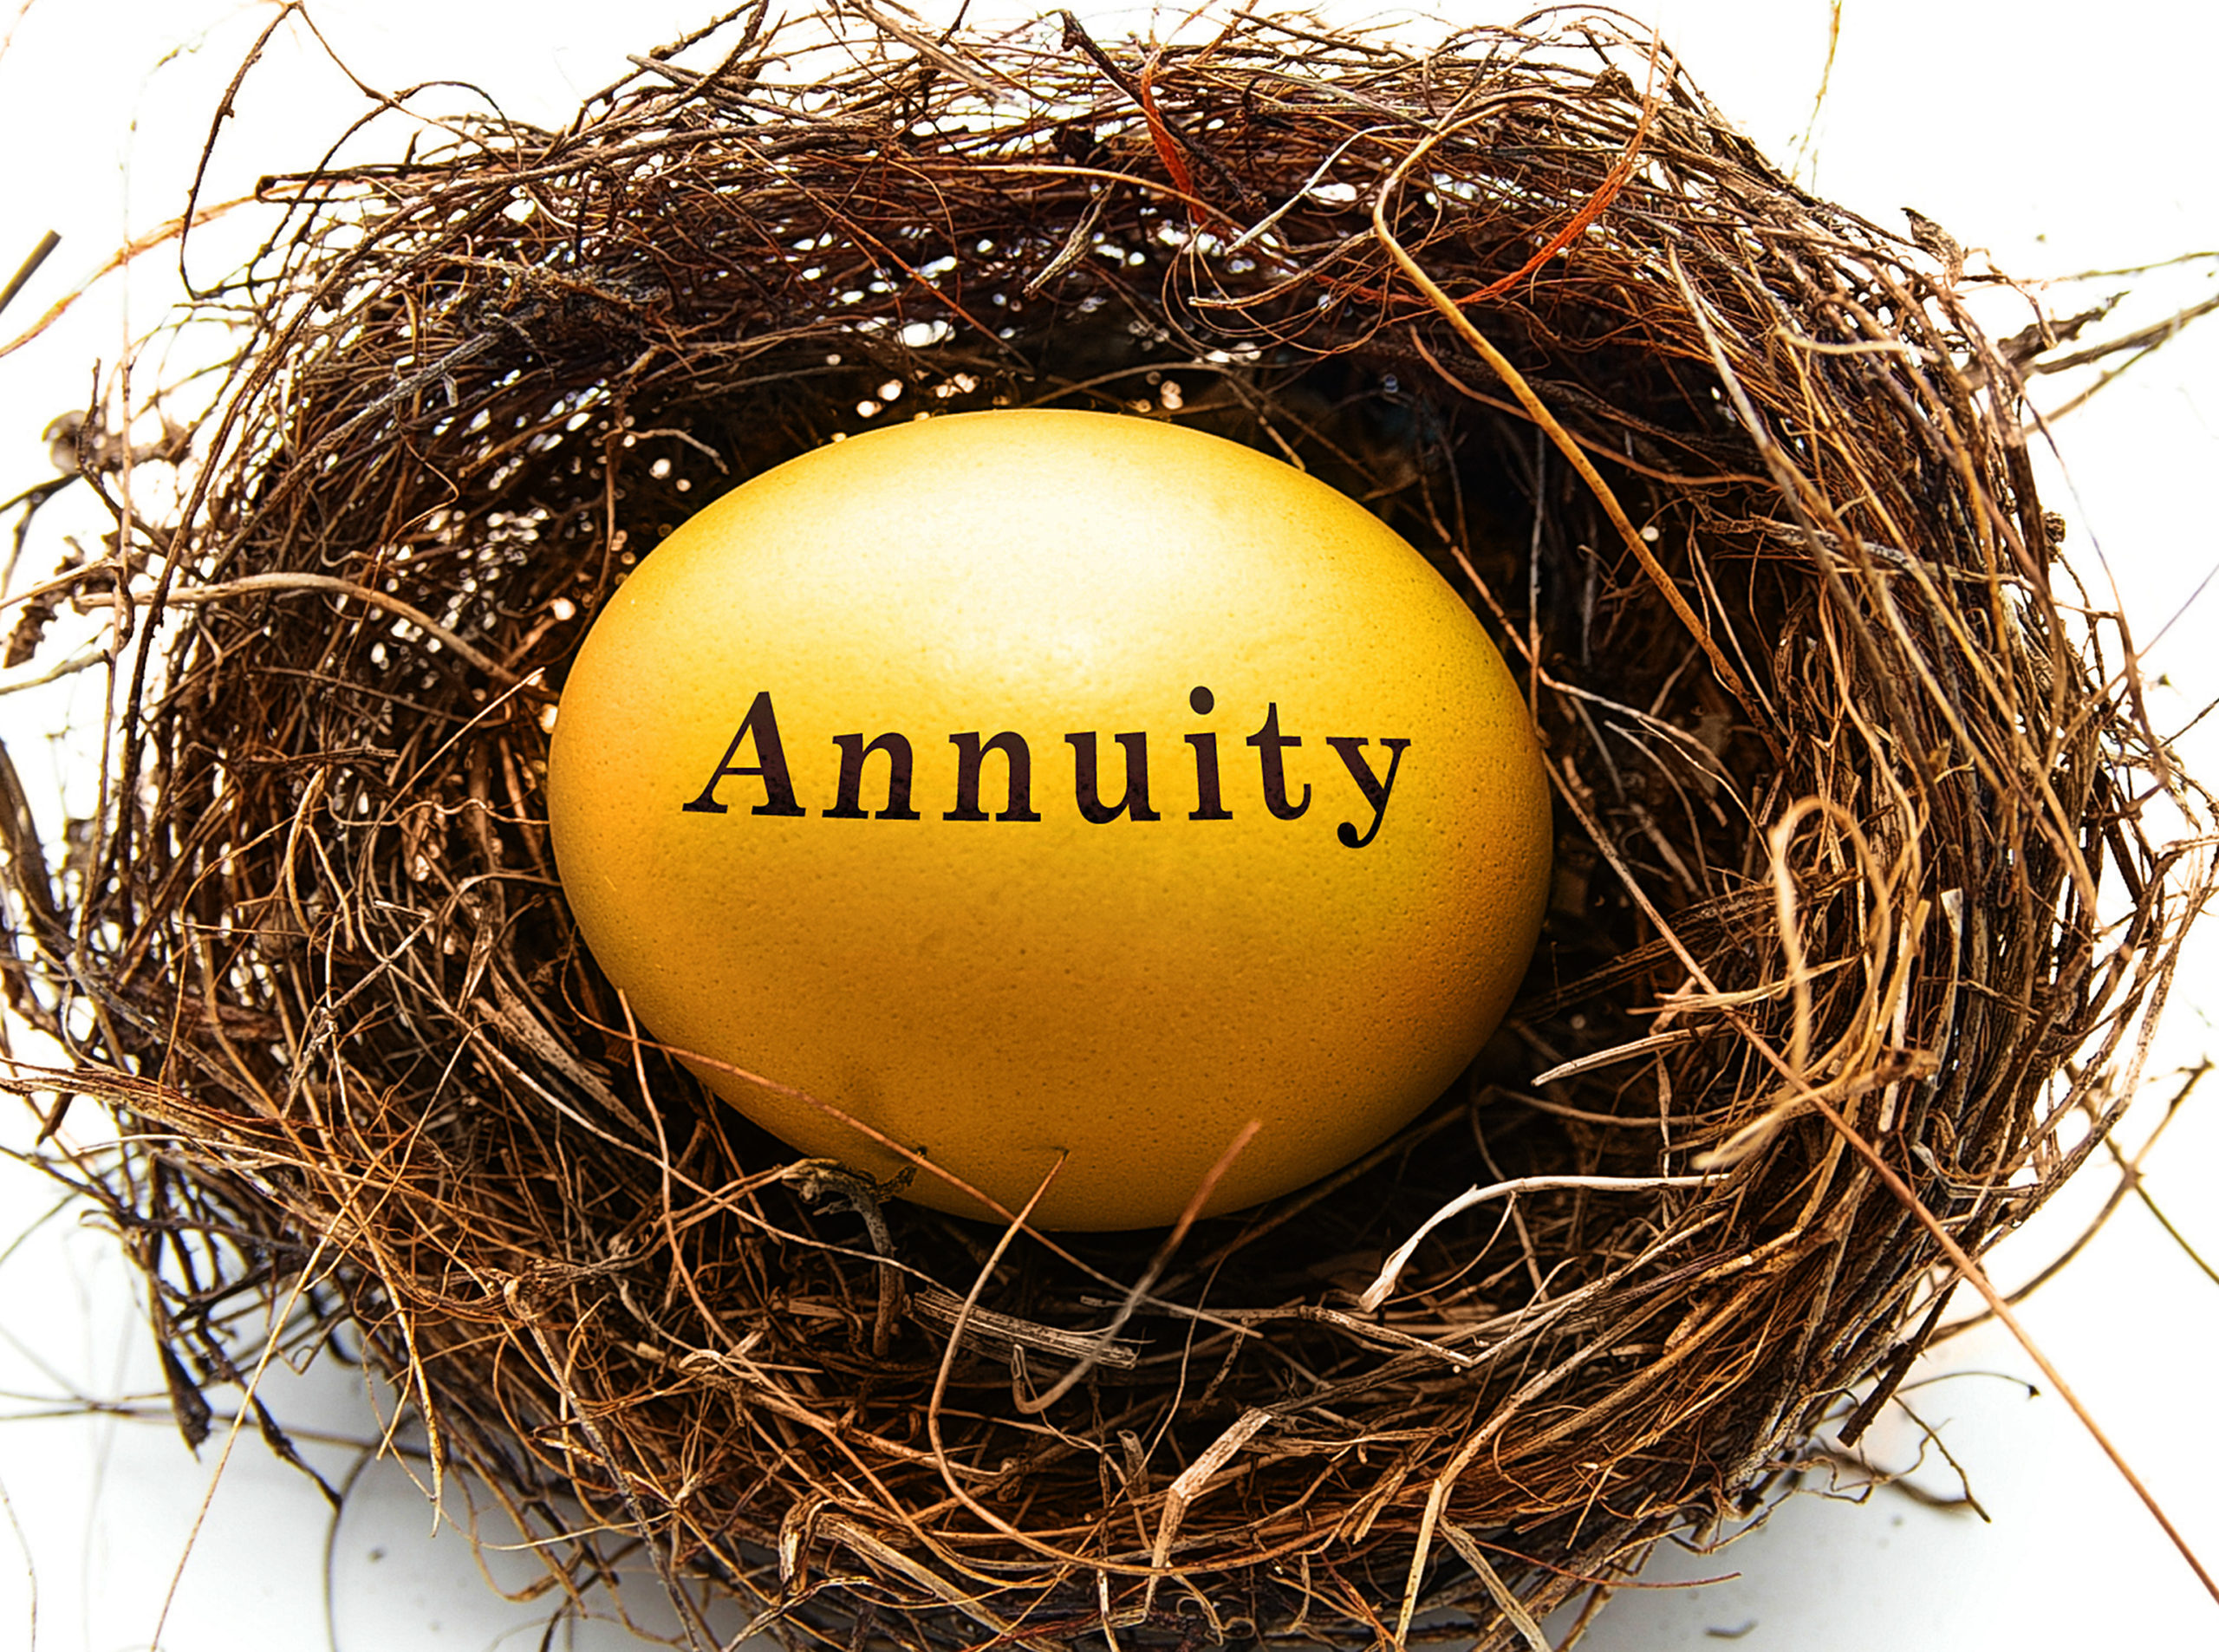 annuity, golden egg